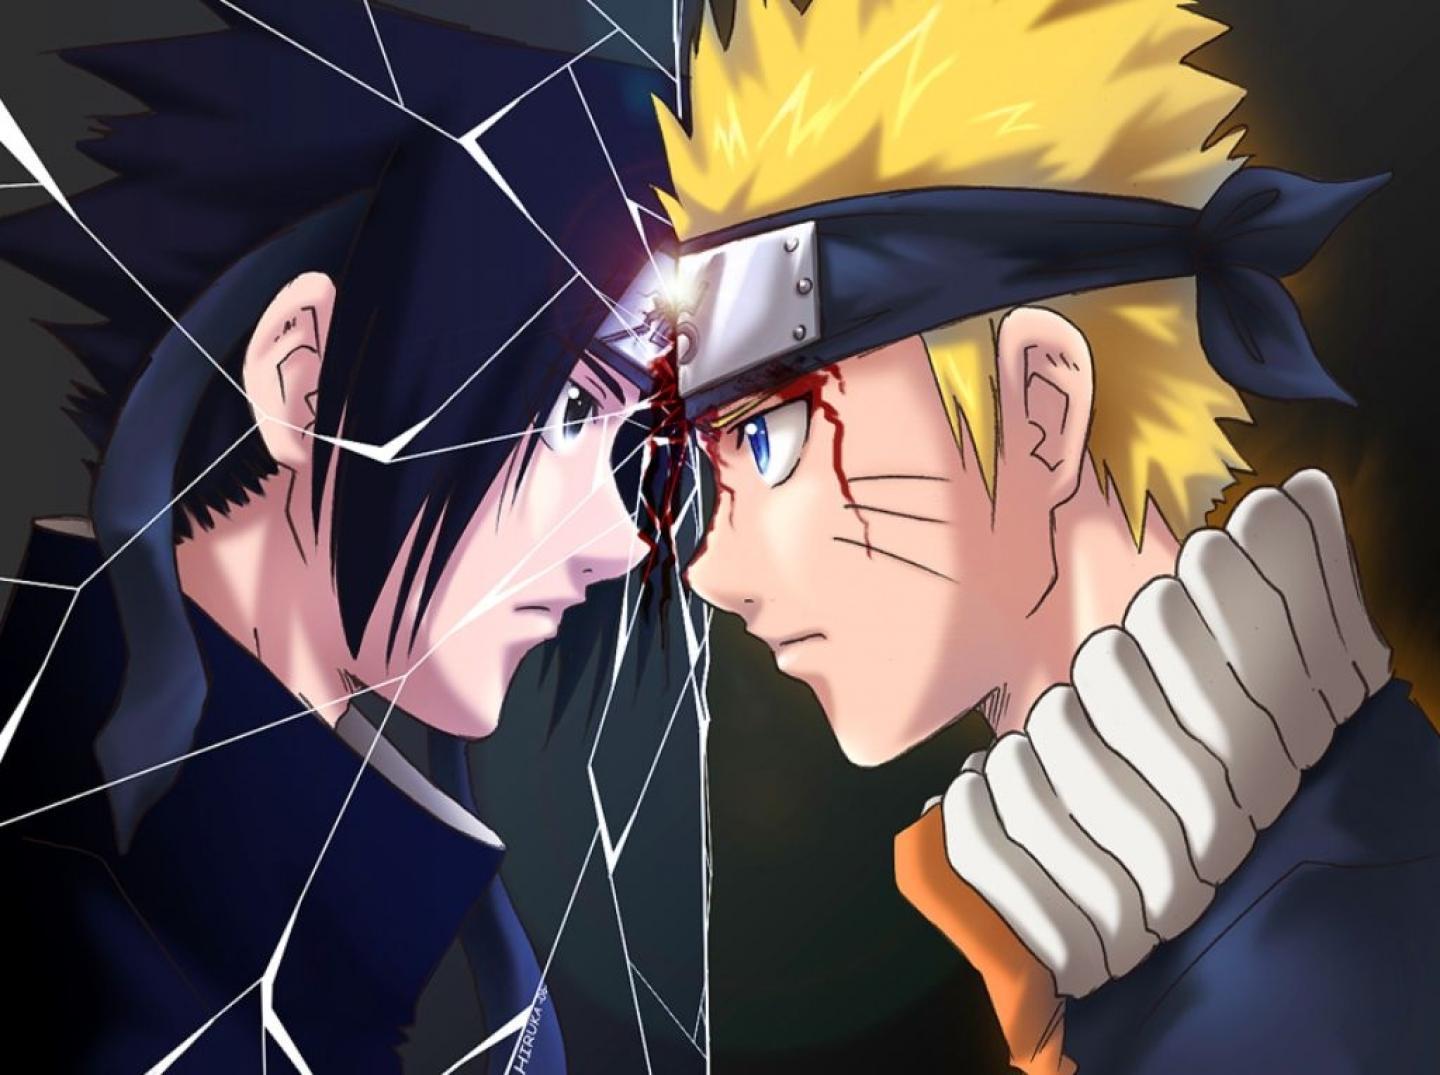 Sasuke Vs Naruto Image HD Wallpaper And